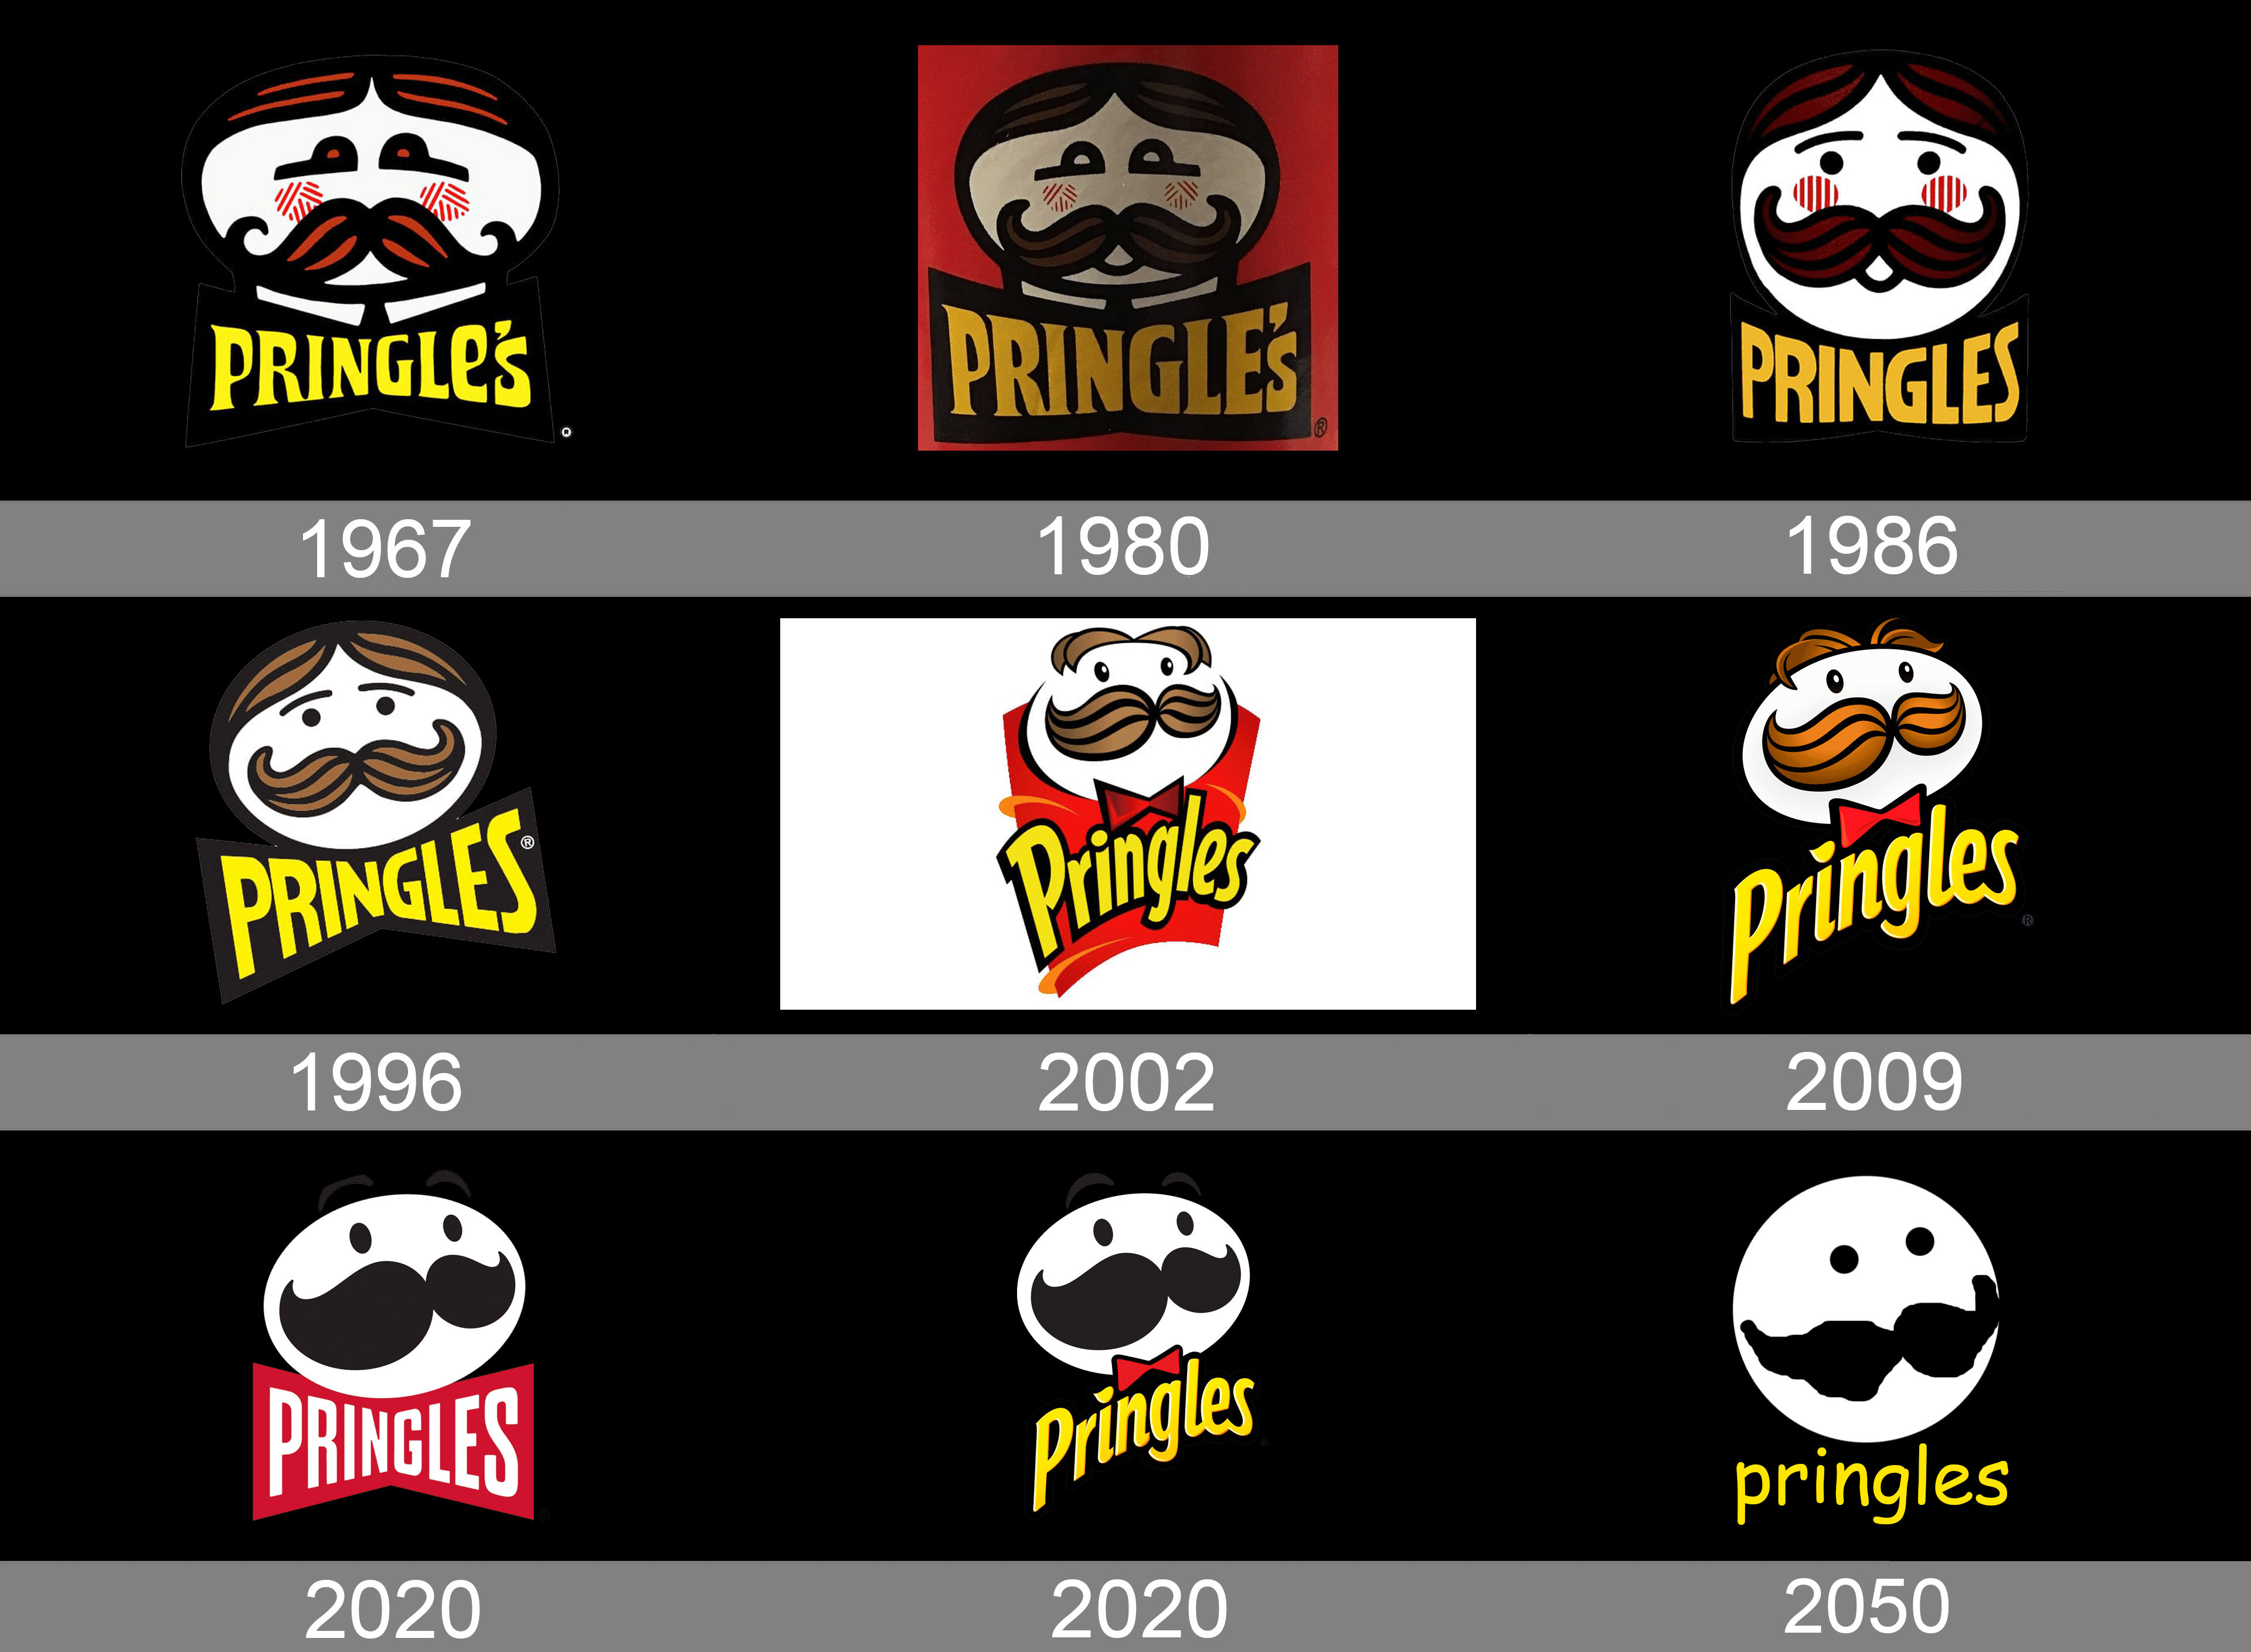 dank memes - pringles - Pringles Pringles Pringles 1967 1980 1986 Pringles Pringles Pringles 1996 2002 2009 Pringles Pringles pringles 2050 2020 2020